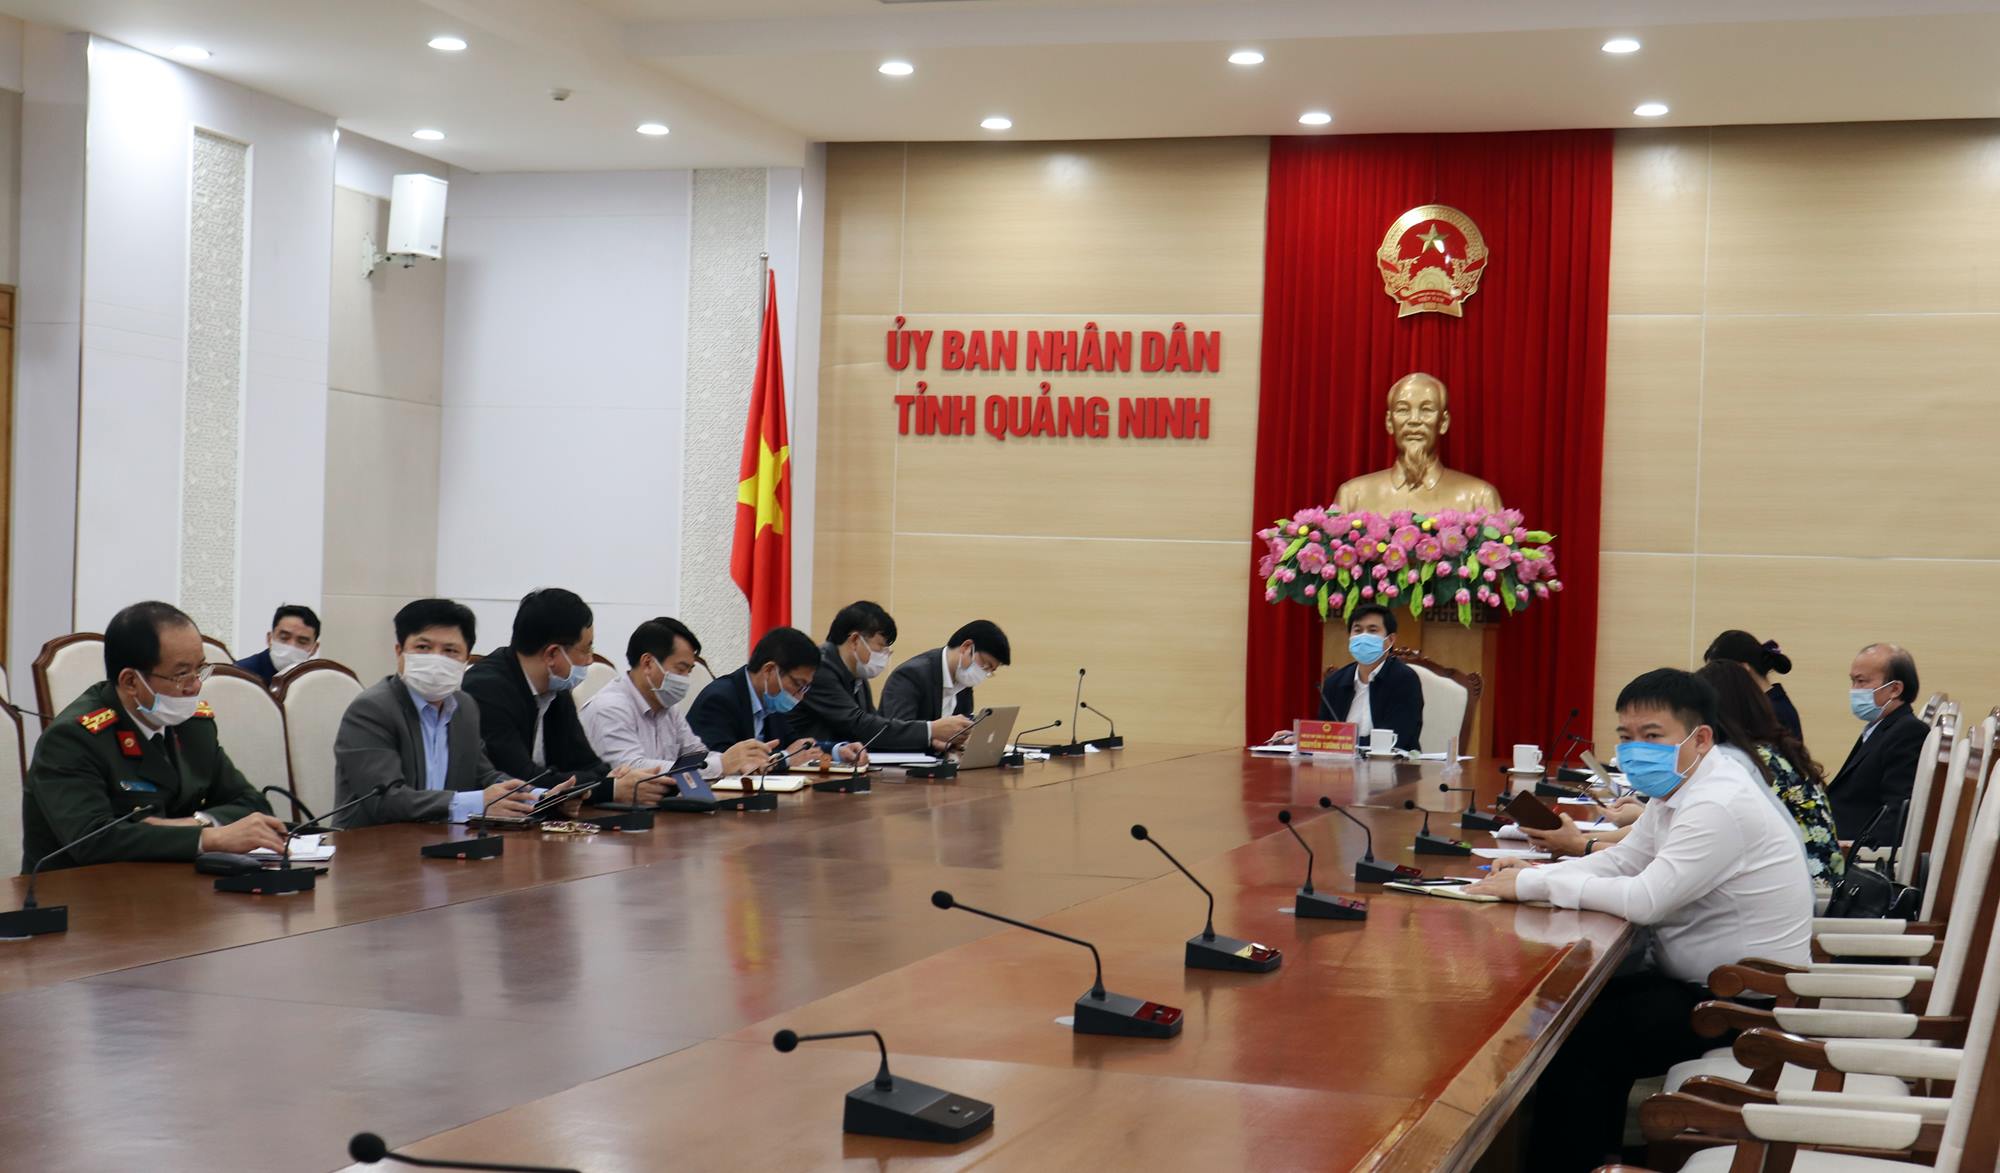 Đồng chí Nguyễn Tường Văn, Chủ tịch UBND tỉnh chỉ đạo tại điểm cầu Quảng Ninh.